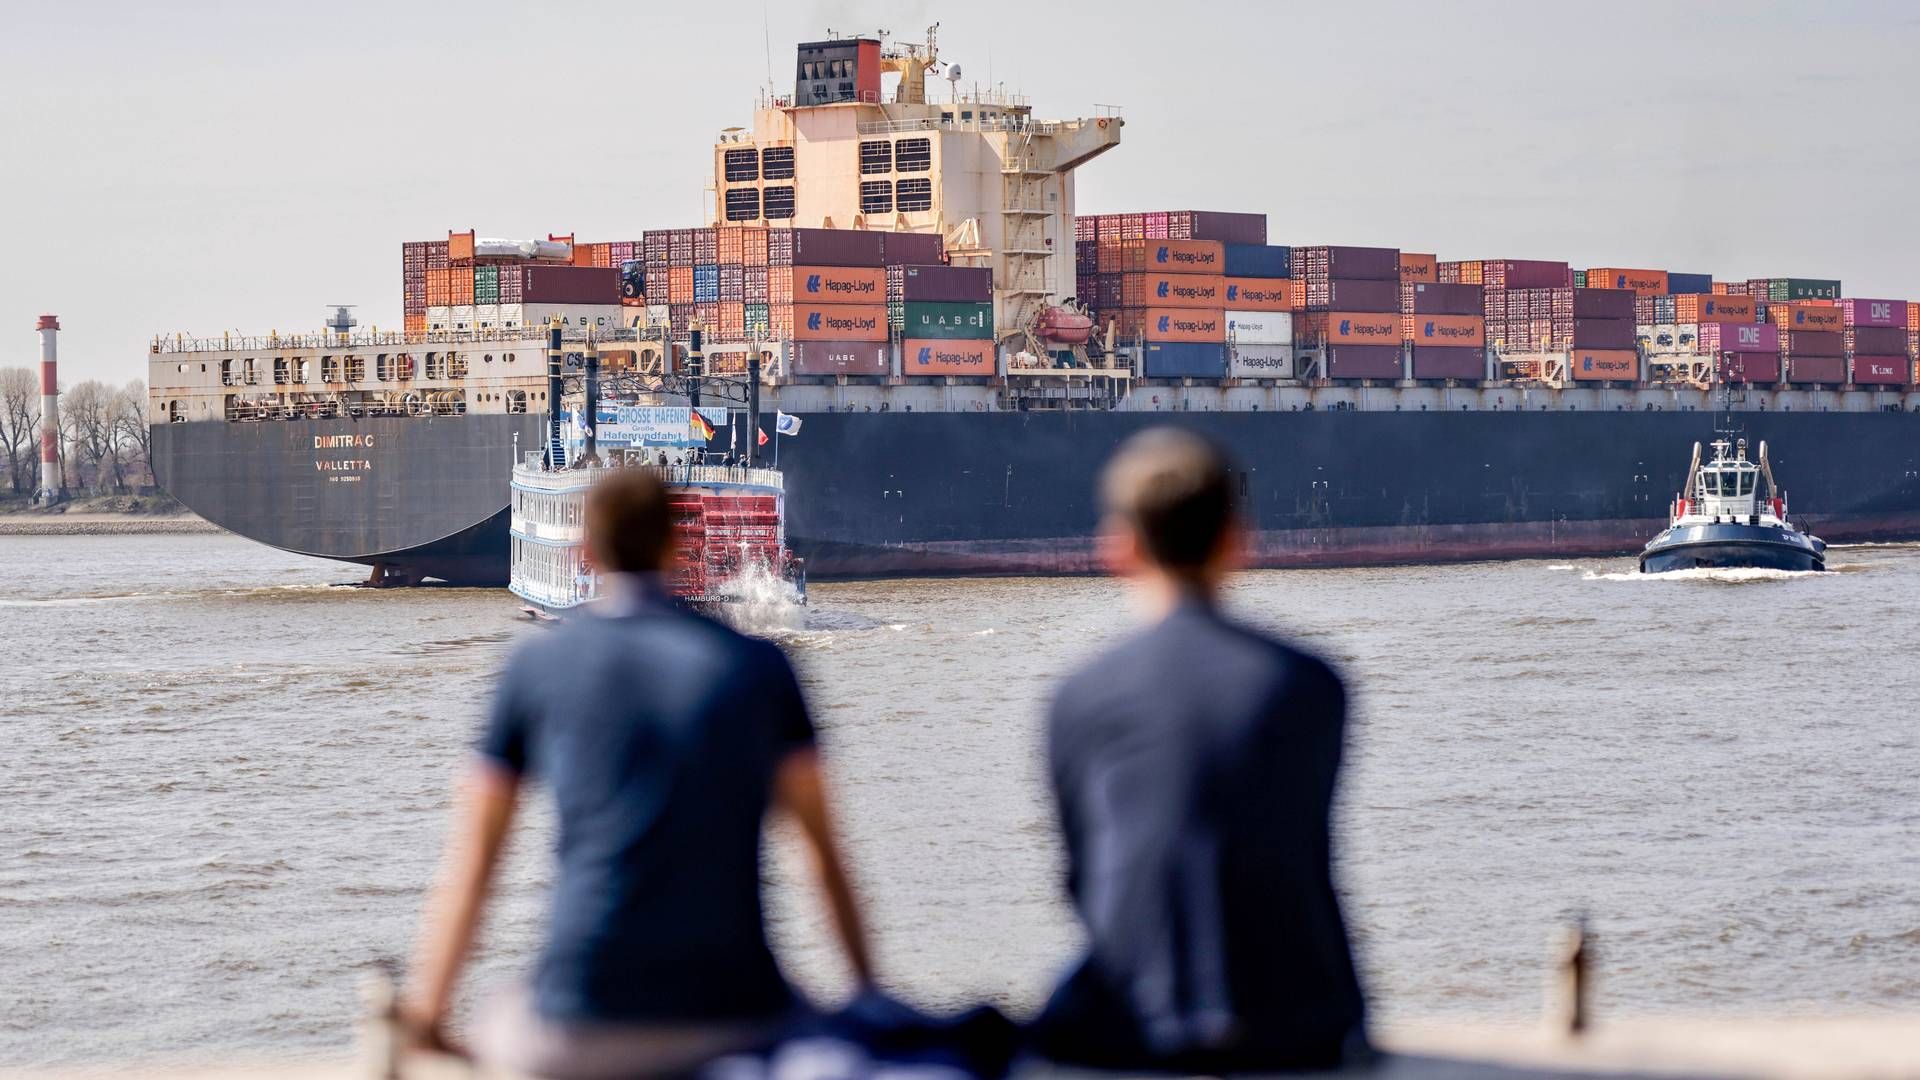 Den globale klimamål for shippingindustrien blev vedtaget i 2018 og lyder på en reduktion på 50 pct. i 2050 i forhold til 2008, hvor udledningen toppede. Mange håber på, at kravet nu bliver strammet. | Foto: Axel Heimken/AP/Ritzau Scanpix